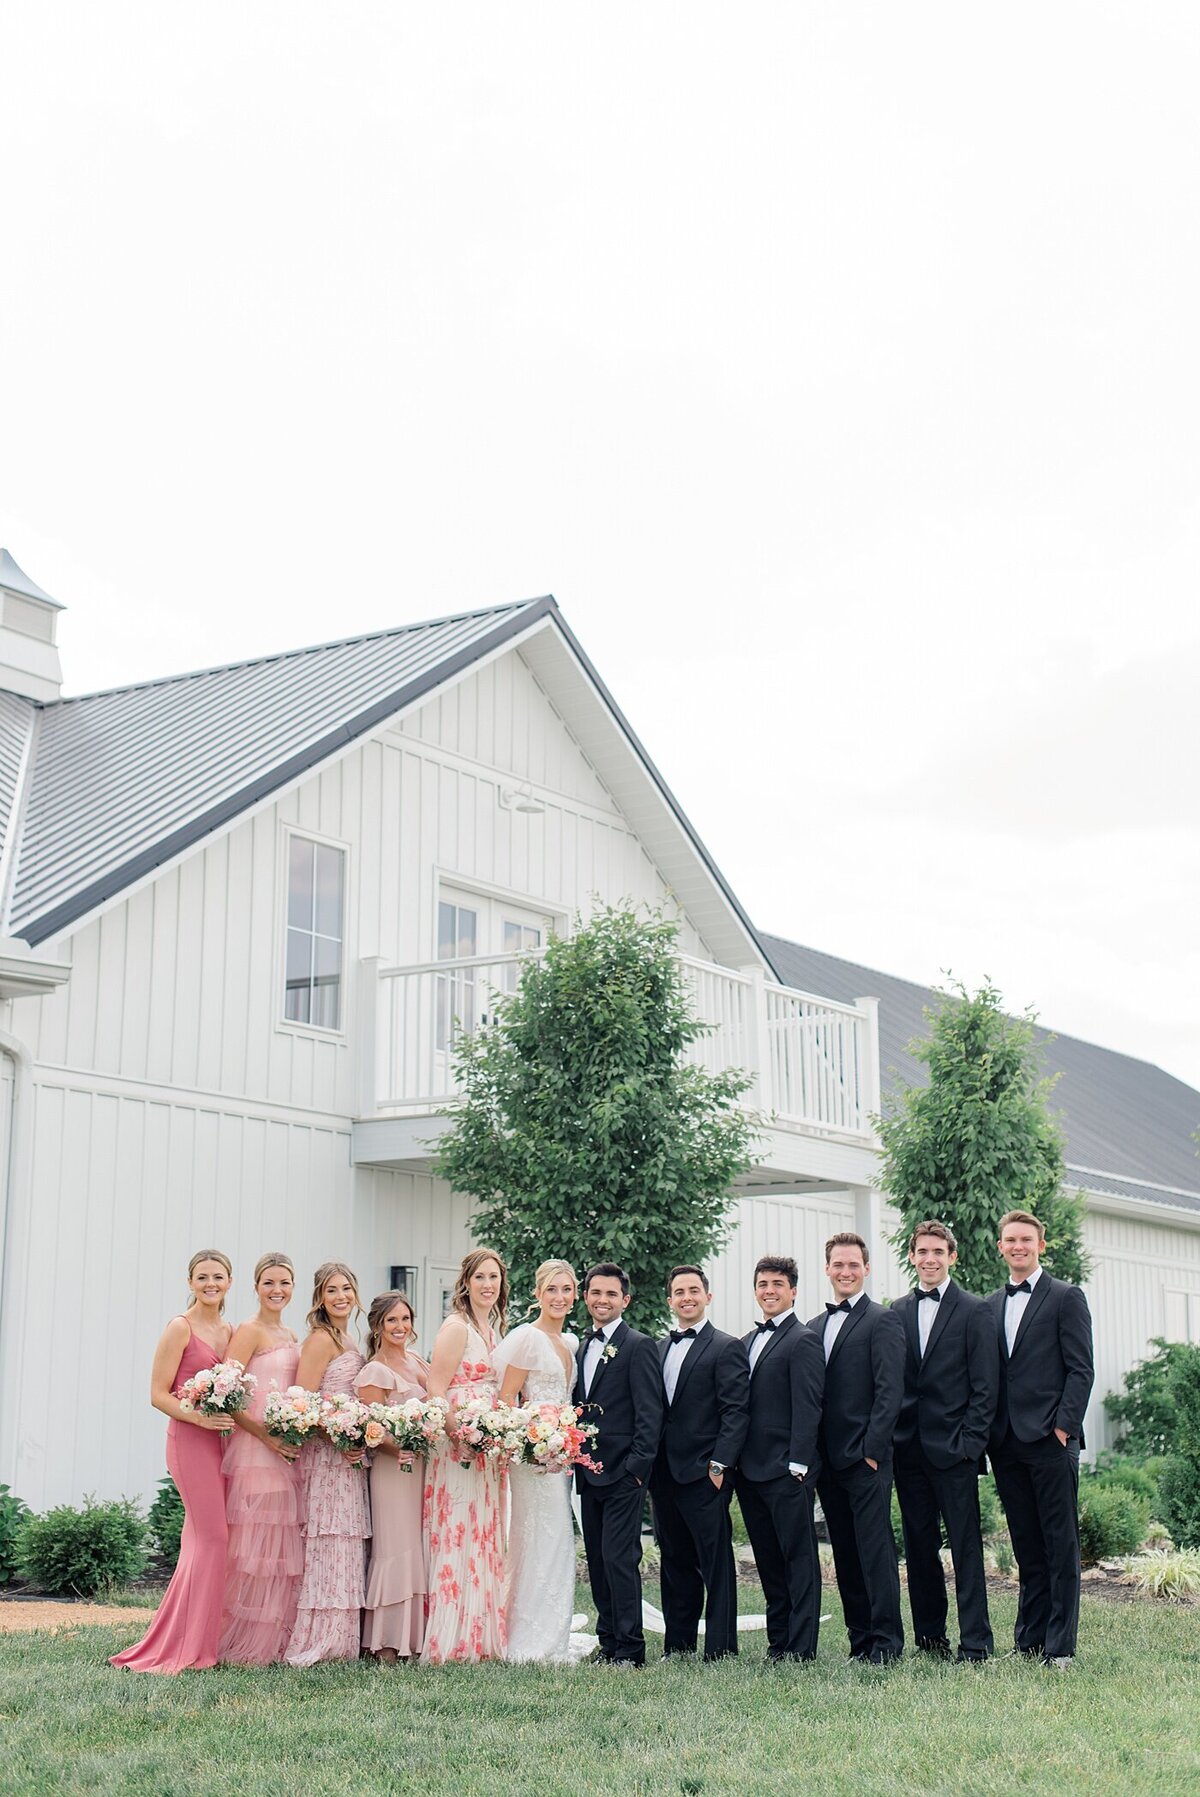 Magnolia-Hill-Farm-Wedding-Ashleigh-Grzybowski-Photography-44